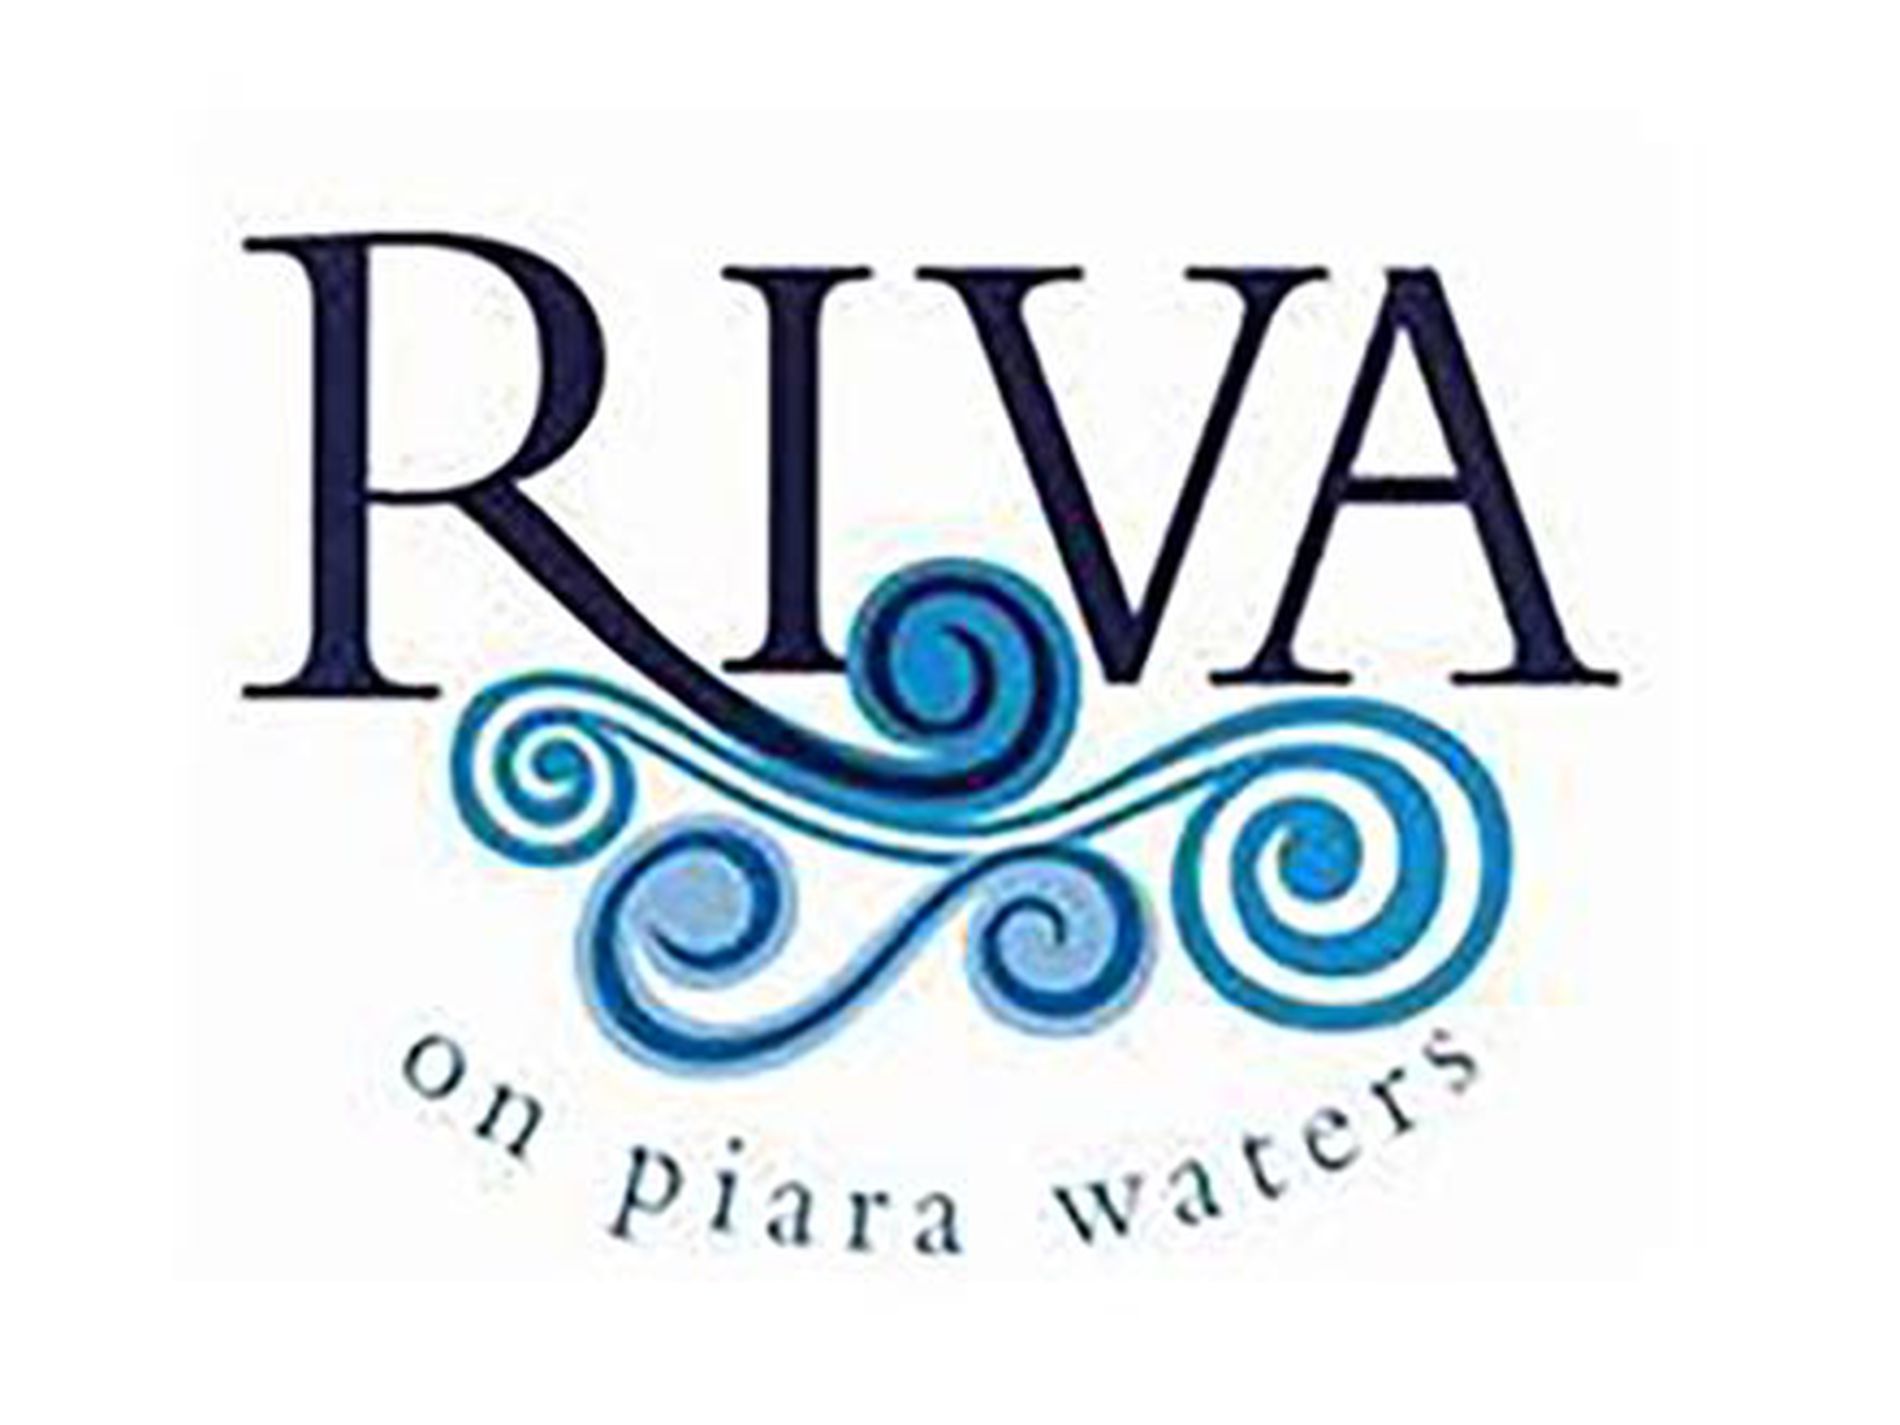 Piara Waters